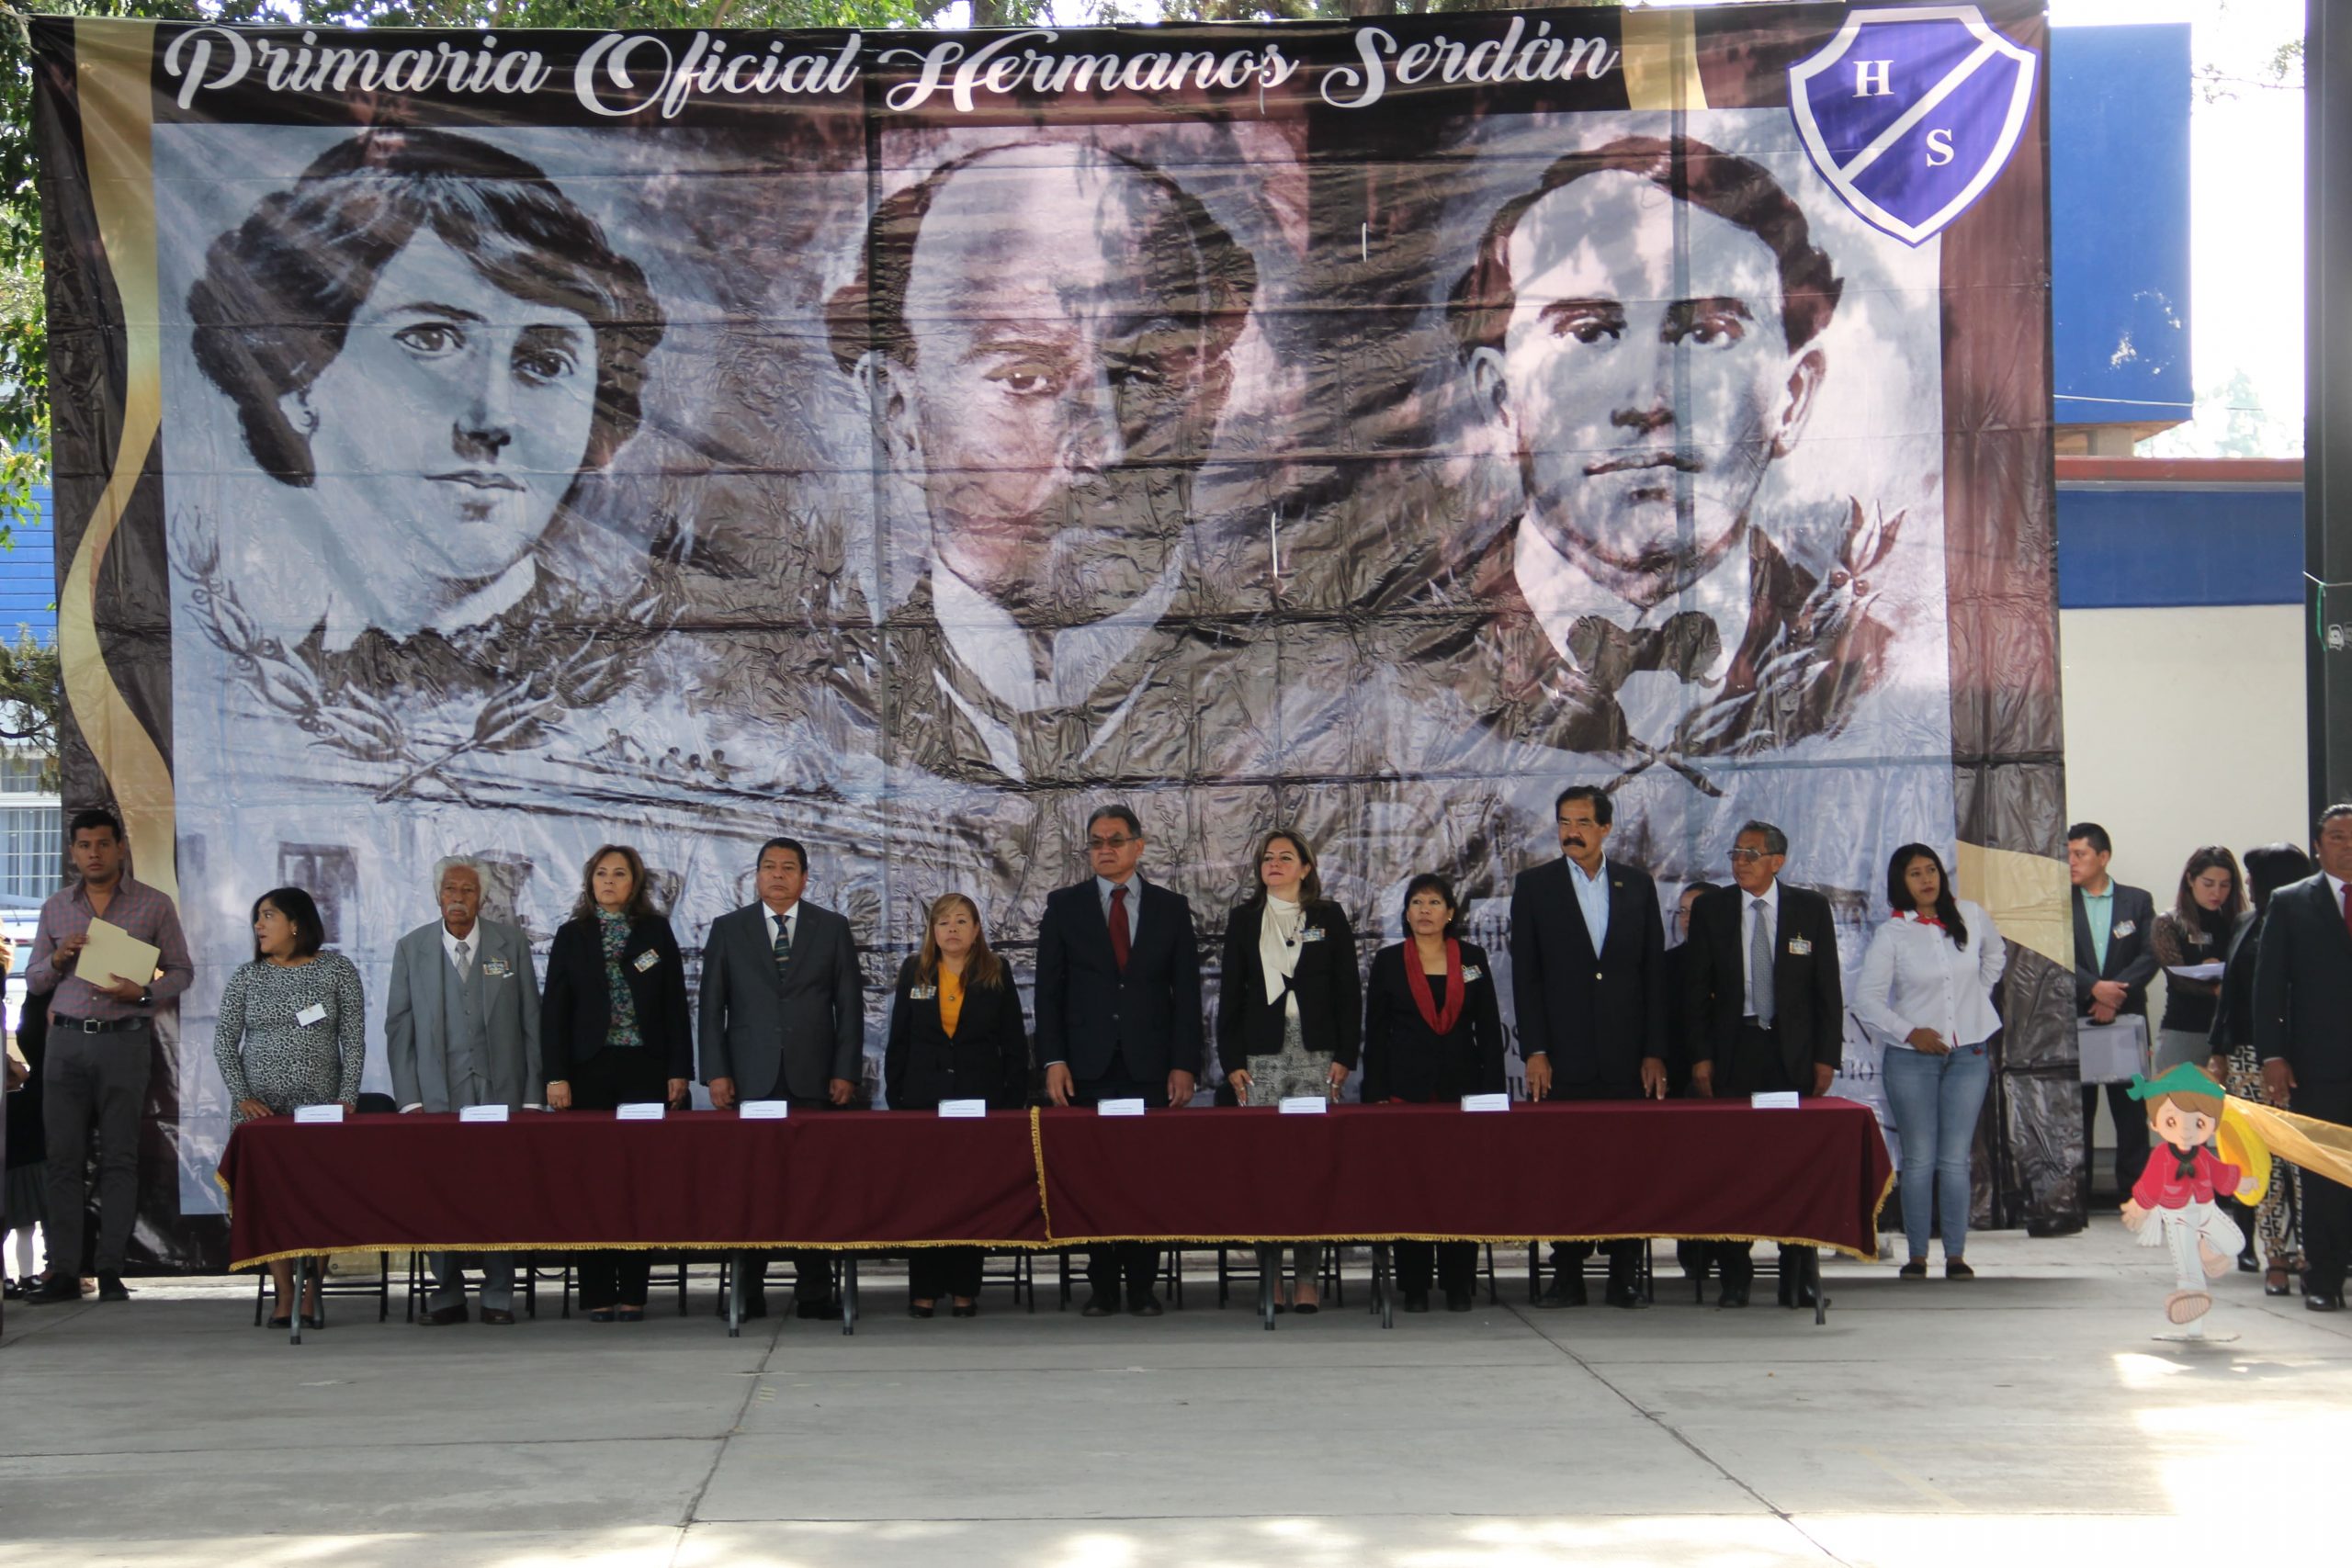 SNTESección 51 Estuvo Presente en el LIX Aniversario de la fundación de la Escuela Primaria Oficial Hermanos Serdán.